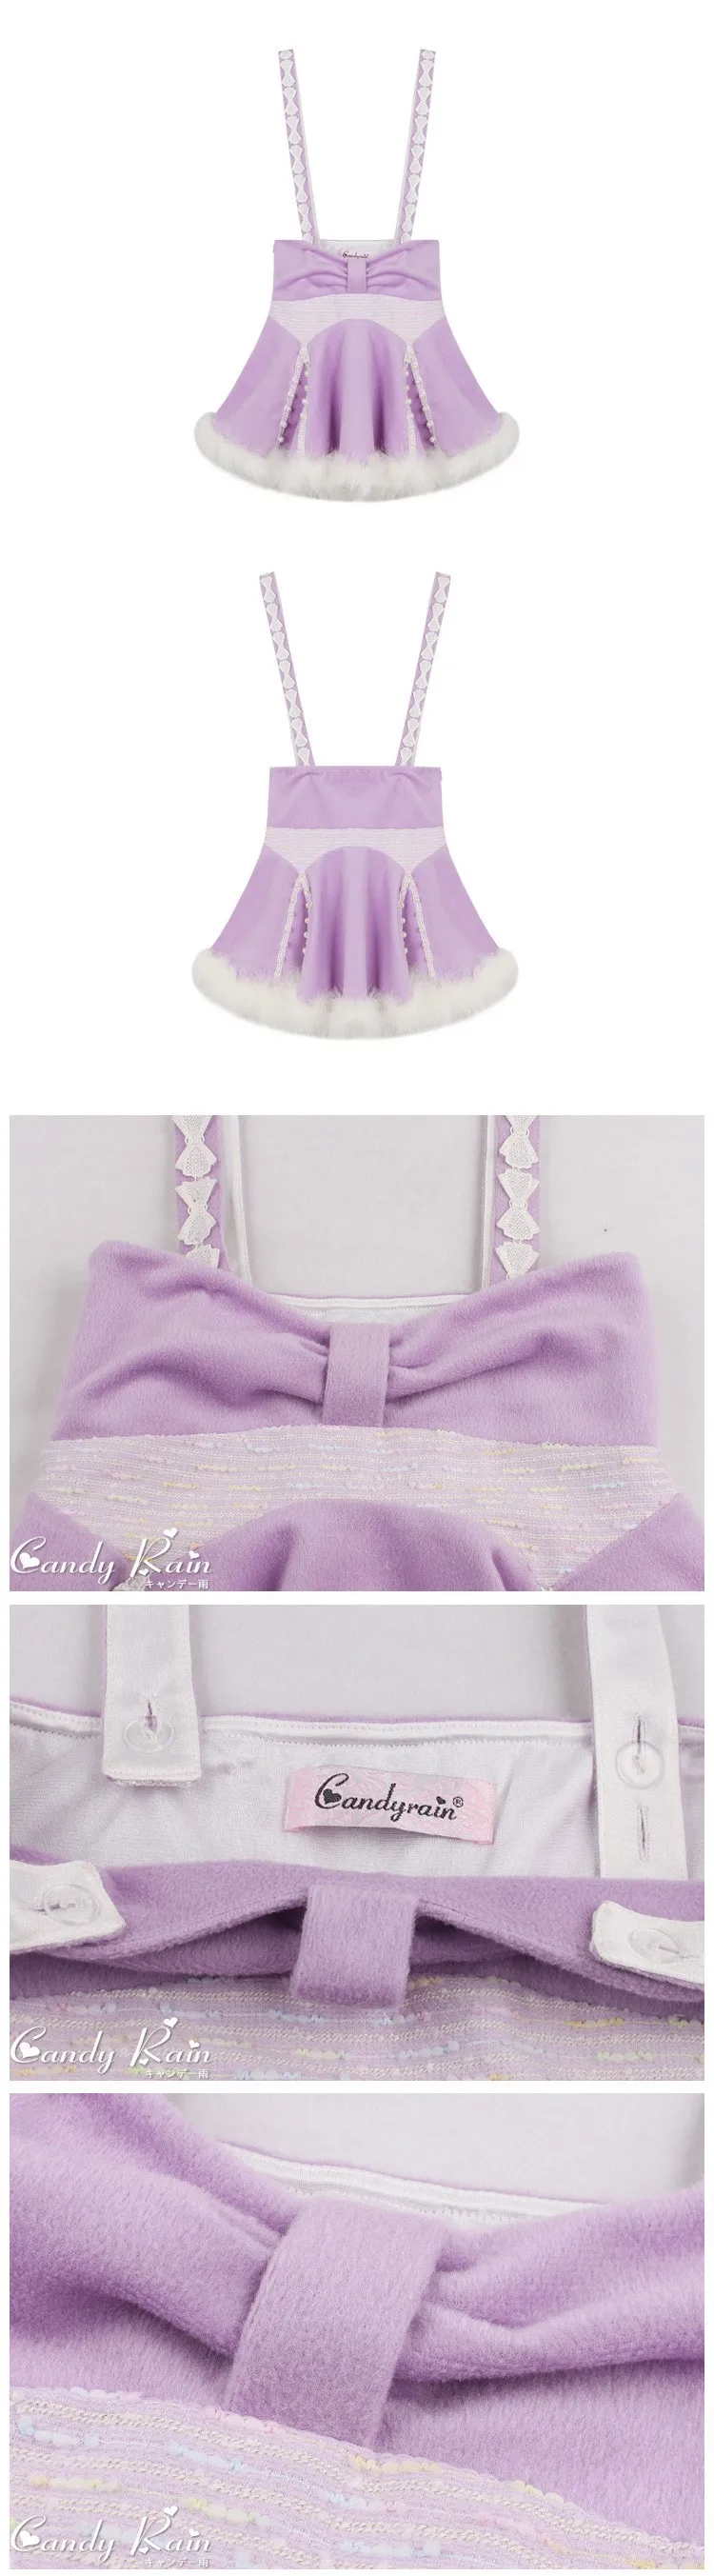 Принцесса сладкий Лолита юбка конфеты дождь в японском стиле милые Лоскутные Империя фланель романтический фиолетовый бальный наряд брекеты юбка CR26